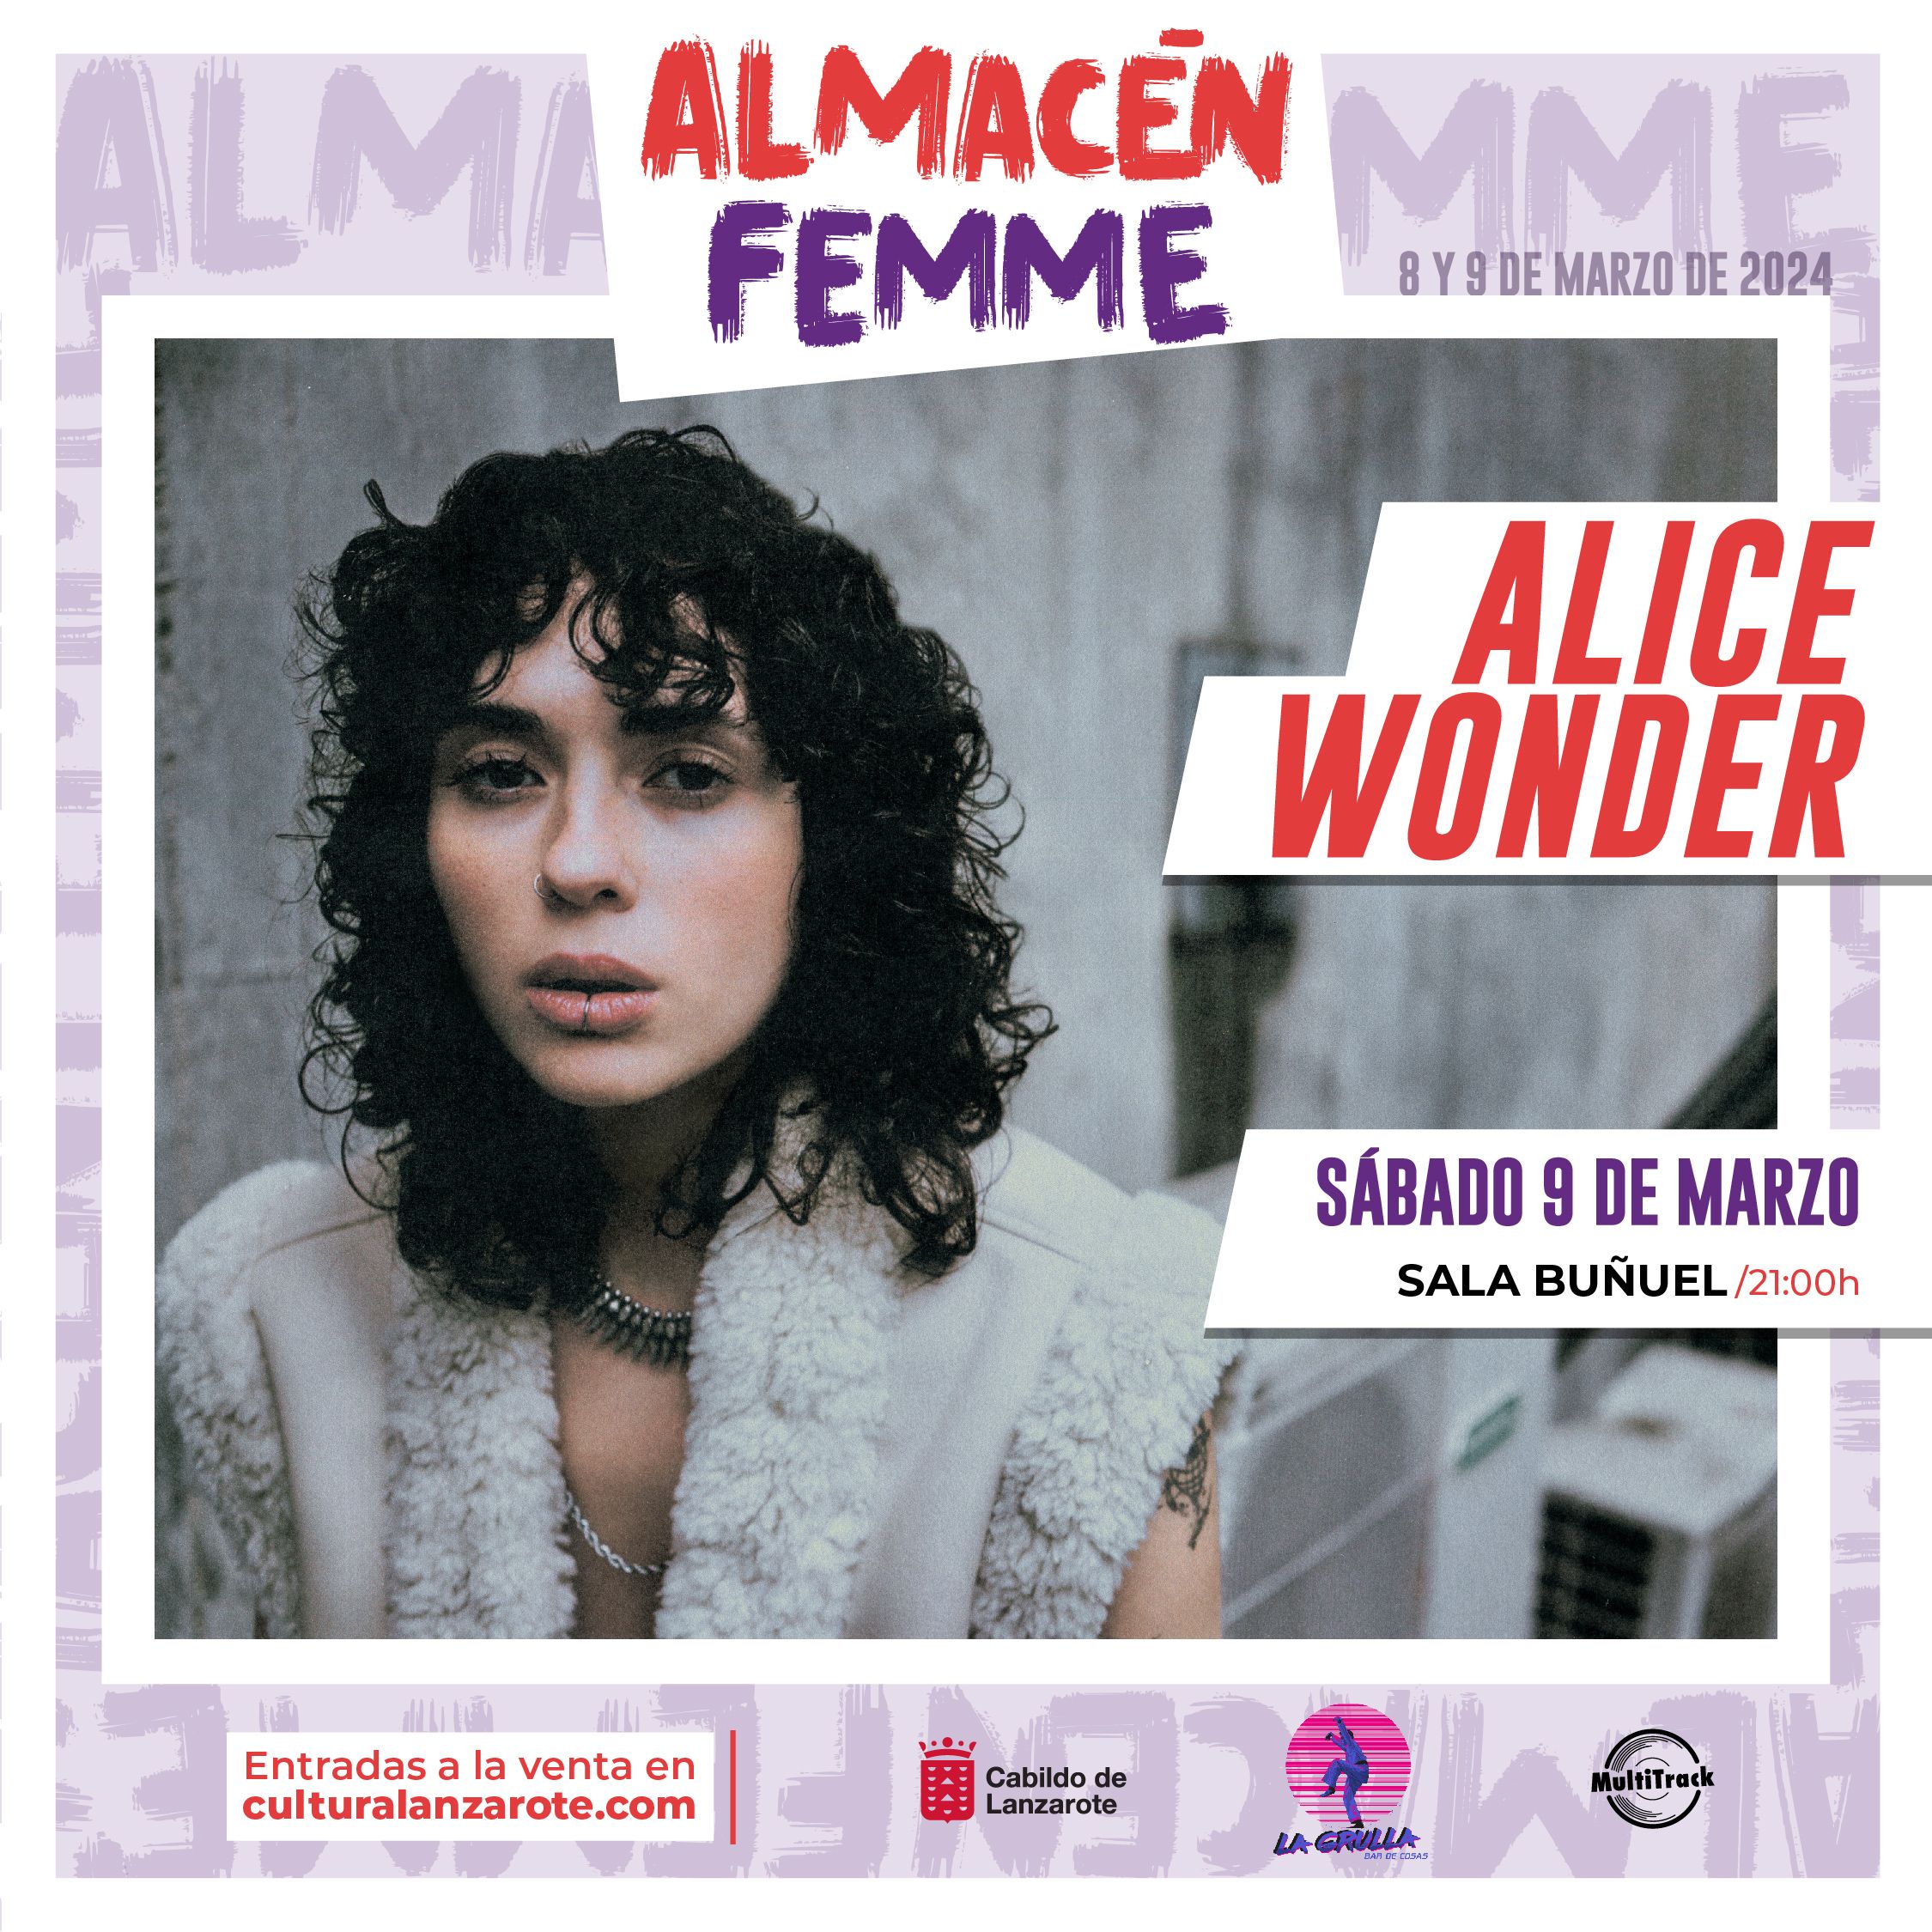 Cartel de la artista Alice Wonder en El Almacén